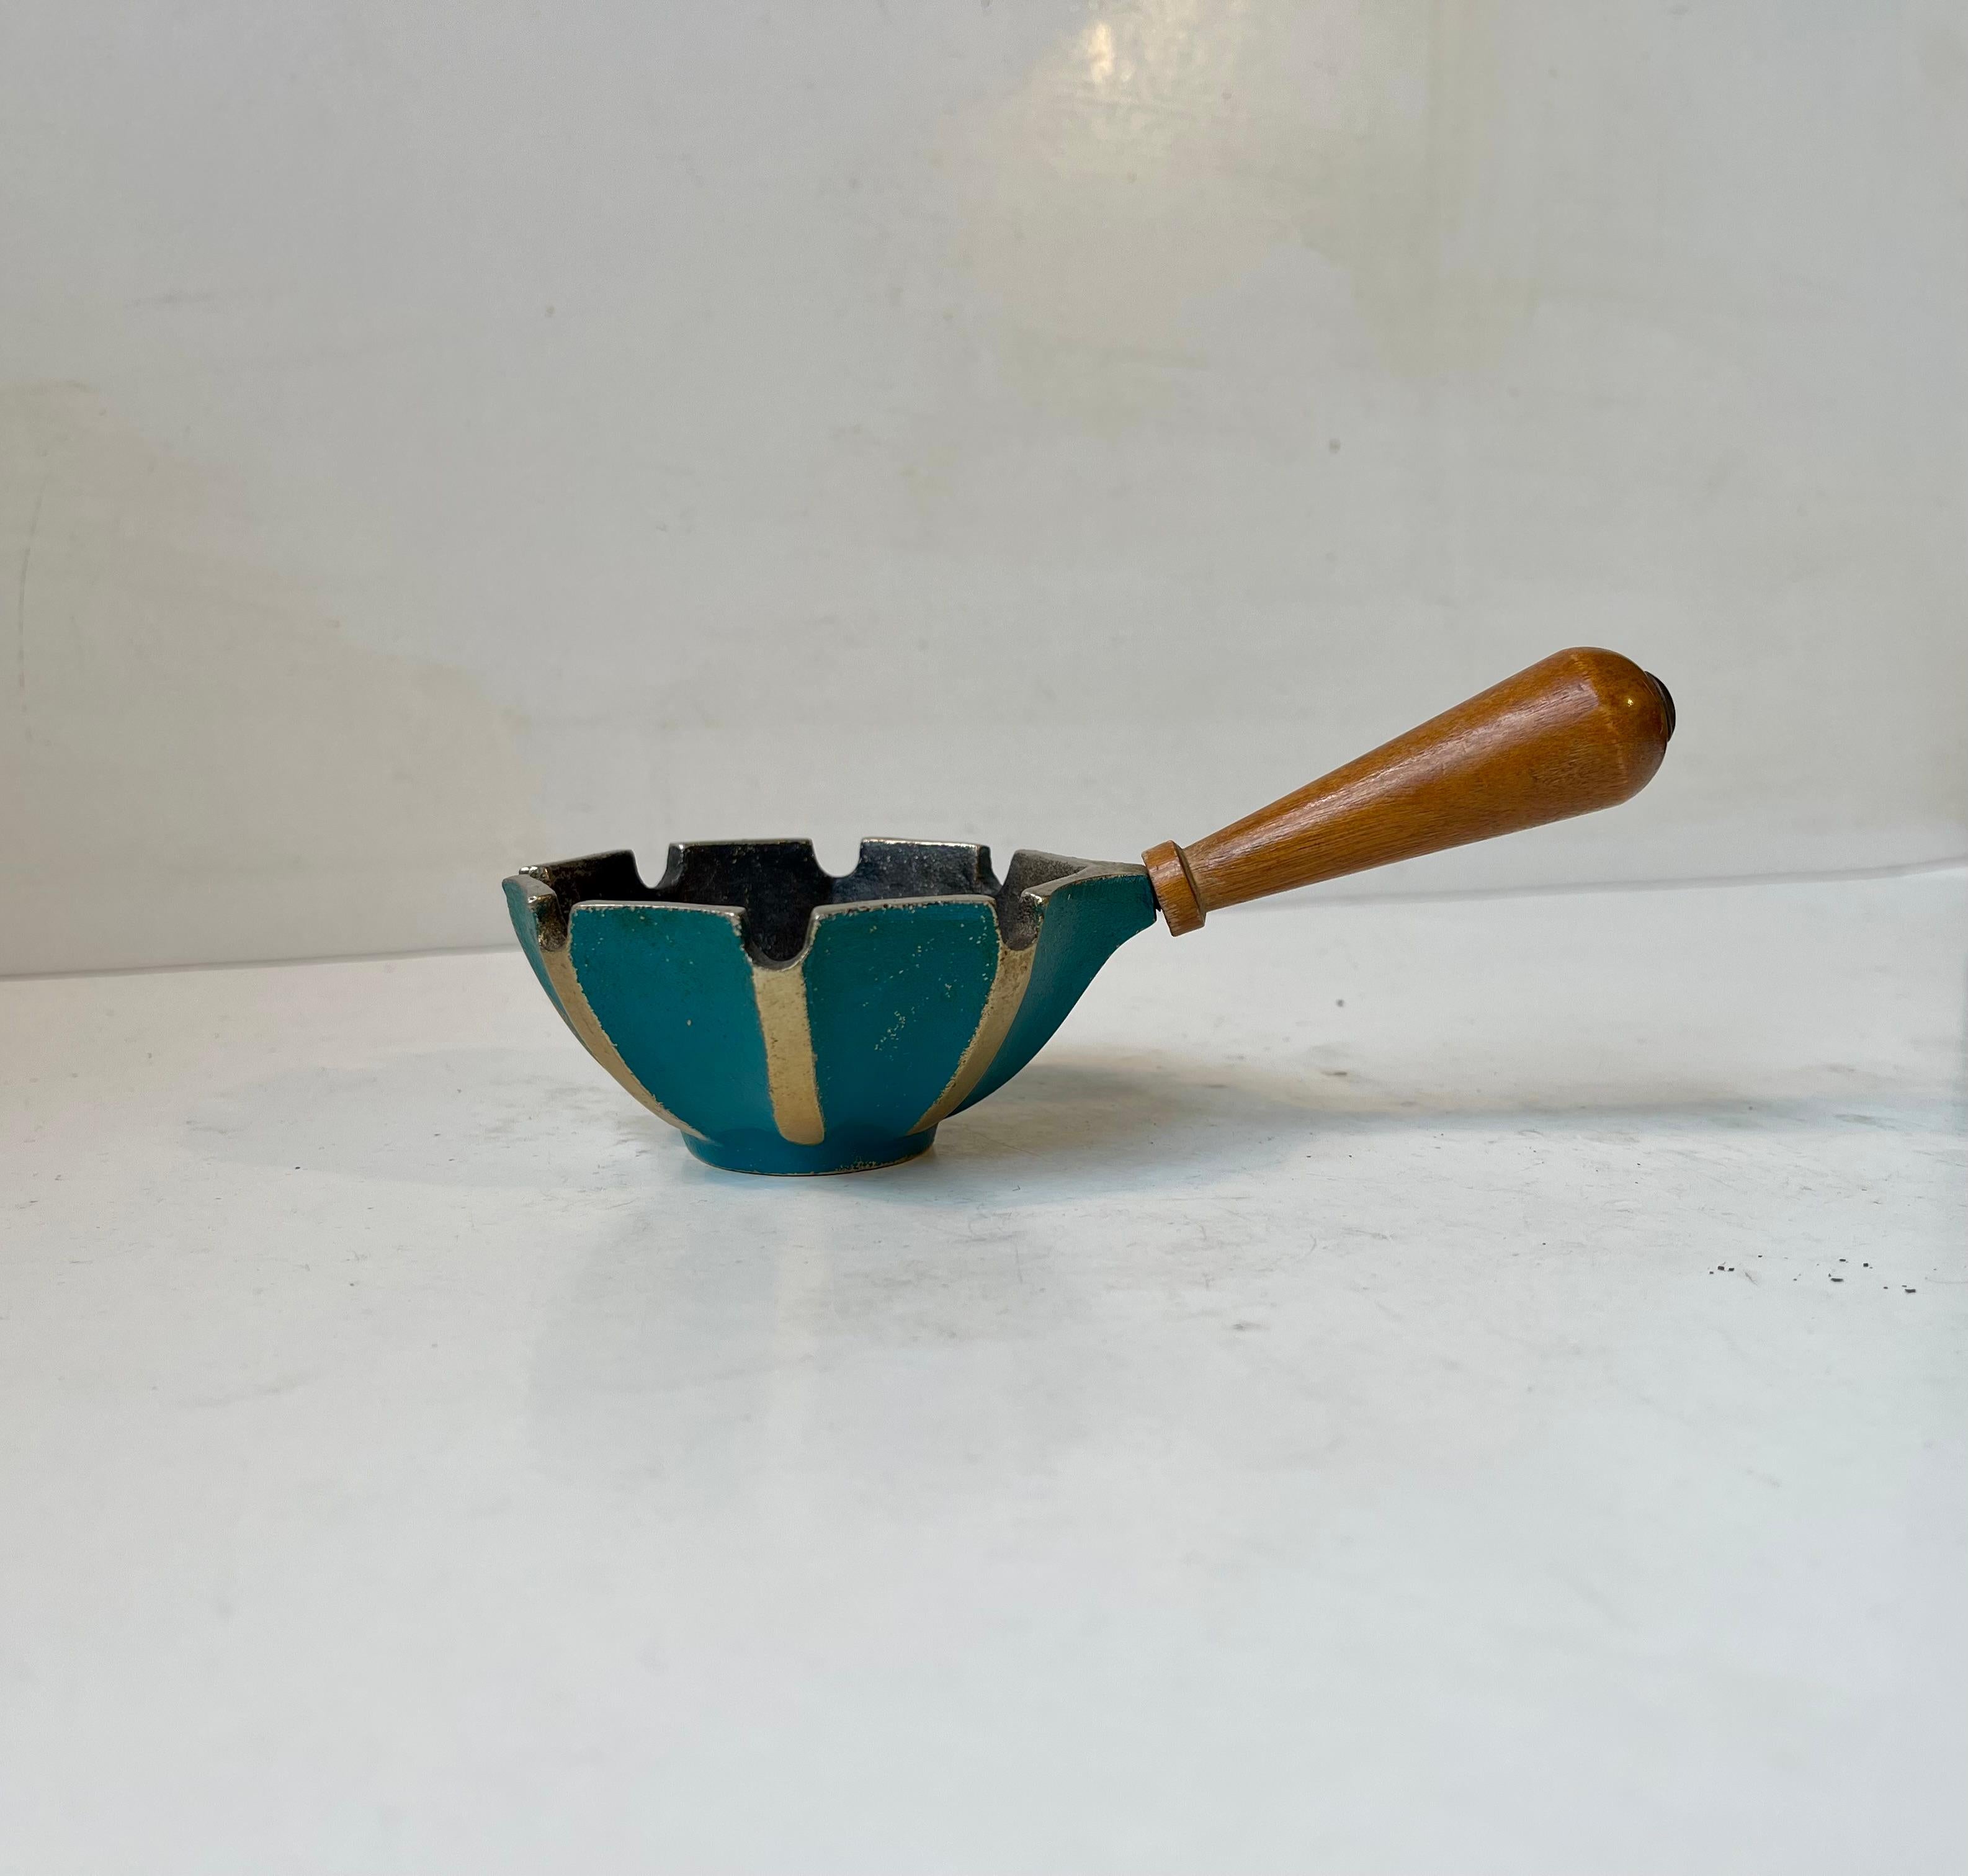 Ein praktischer Aschenbecher mit Griff. Er ist aus Buche und geriffeltem Gusseisen gefertigt und teilweise mit blaugrüner Farbe verziert. Hergestellt in Israel, ca. 1960-70. Abmessungen: B: 15/8 cm, H: 4 cm (Schale). Werden Sie grün mit